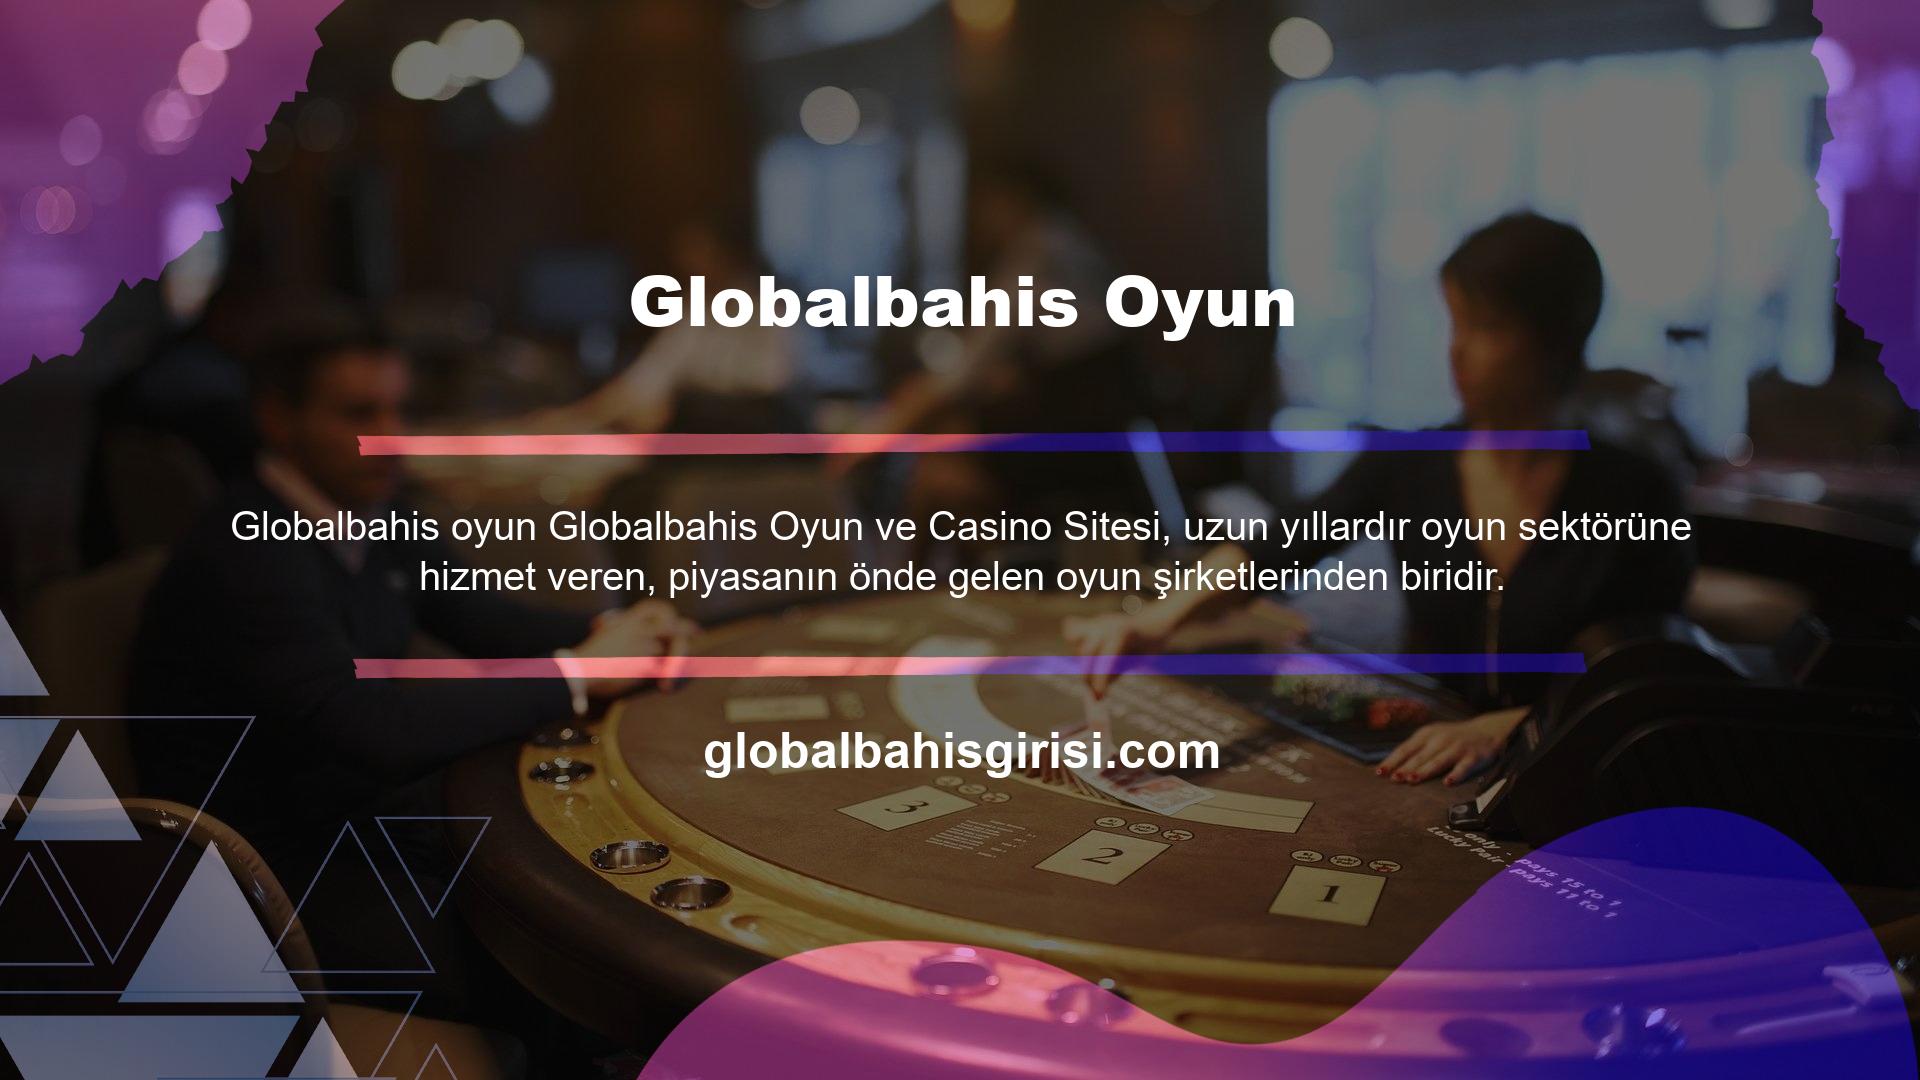 Globalbahis bahis ve casino sitesi, spor bahislerinden casino ve poker oyunlarına kadar onlarca farklı bahis türü sunmaktadır